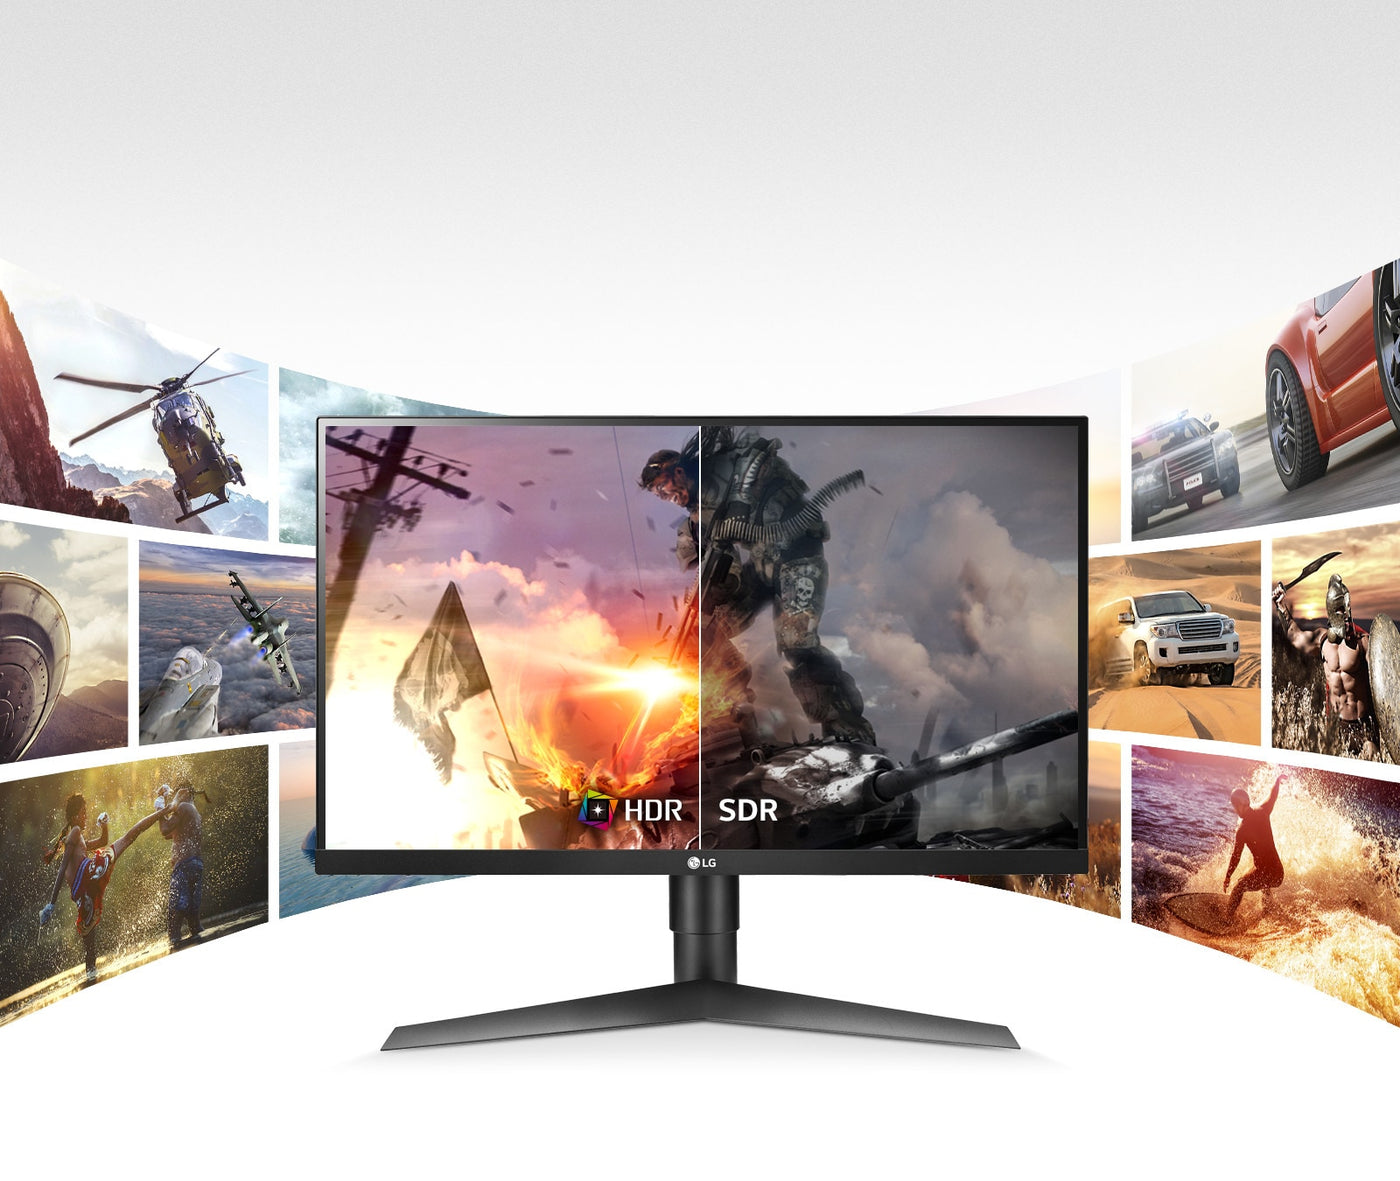  LG 27GL650F monitor HDR10 képminősége a hagyományos képminőséghez képest